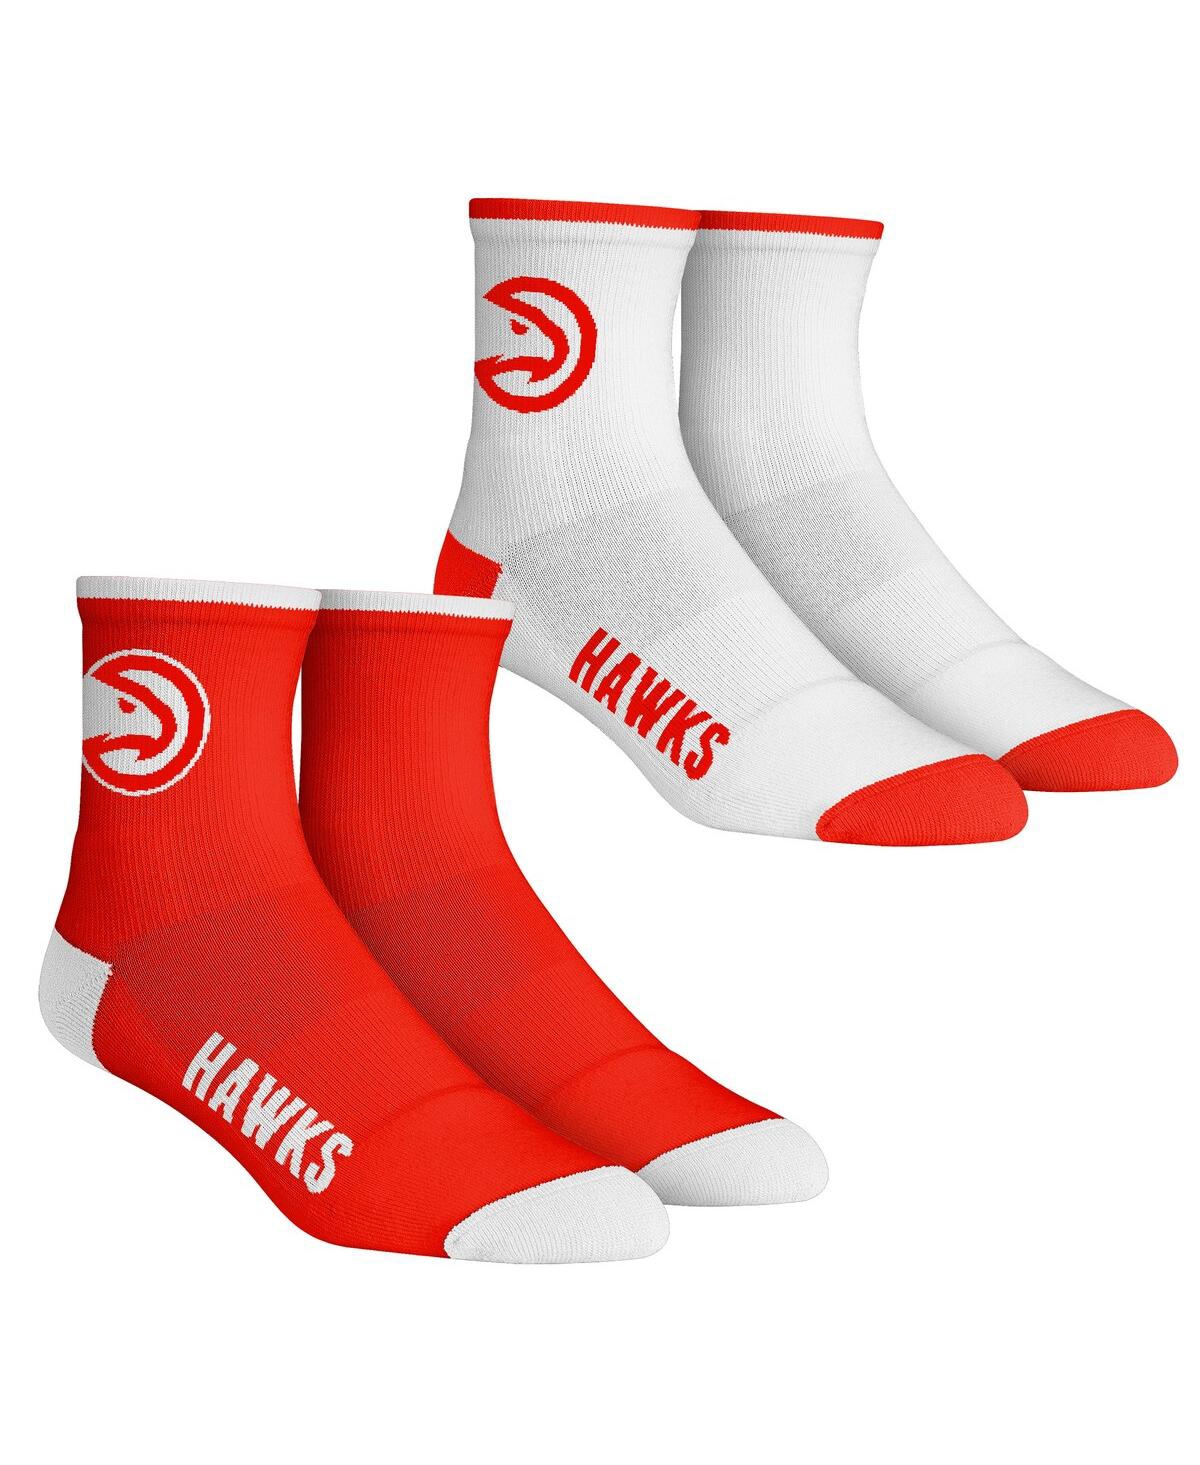 Men's Rock Em Socks Atlanta Hawks Core Team 2-Pack Quarter Length Sock Set - Red, White